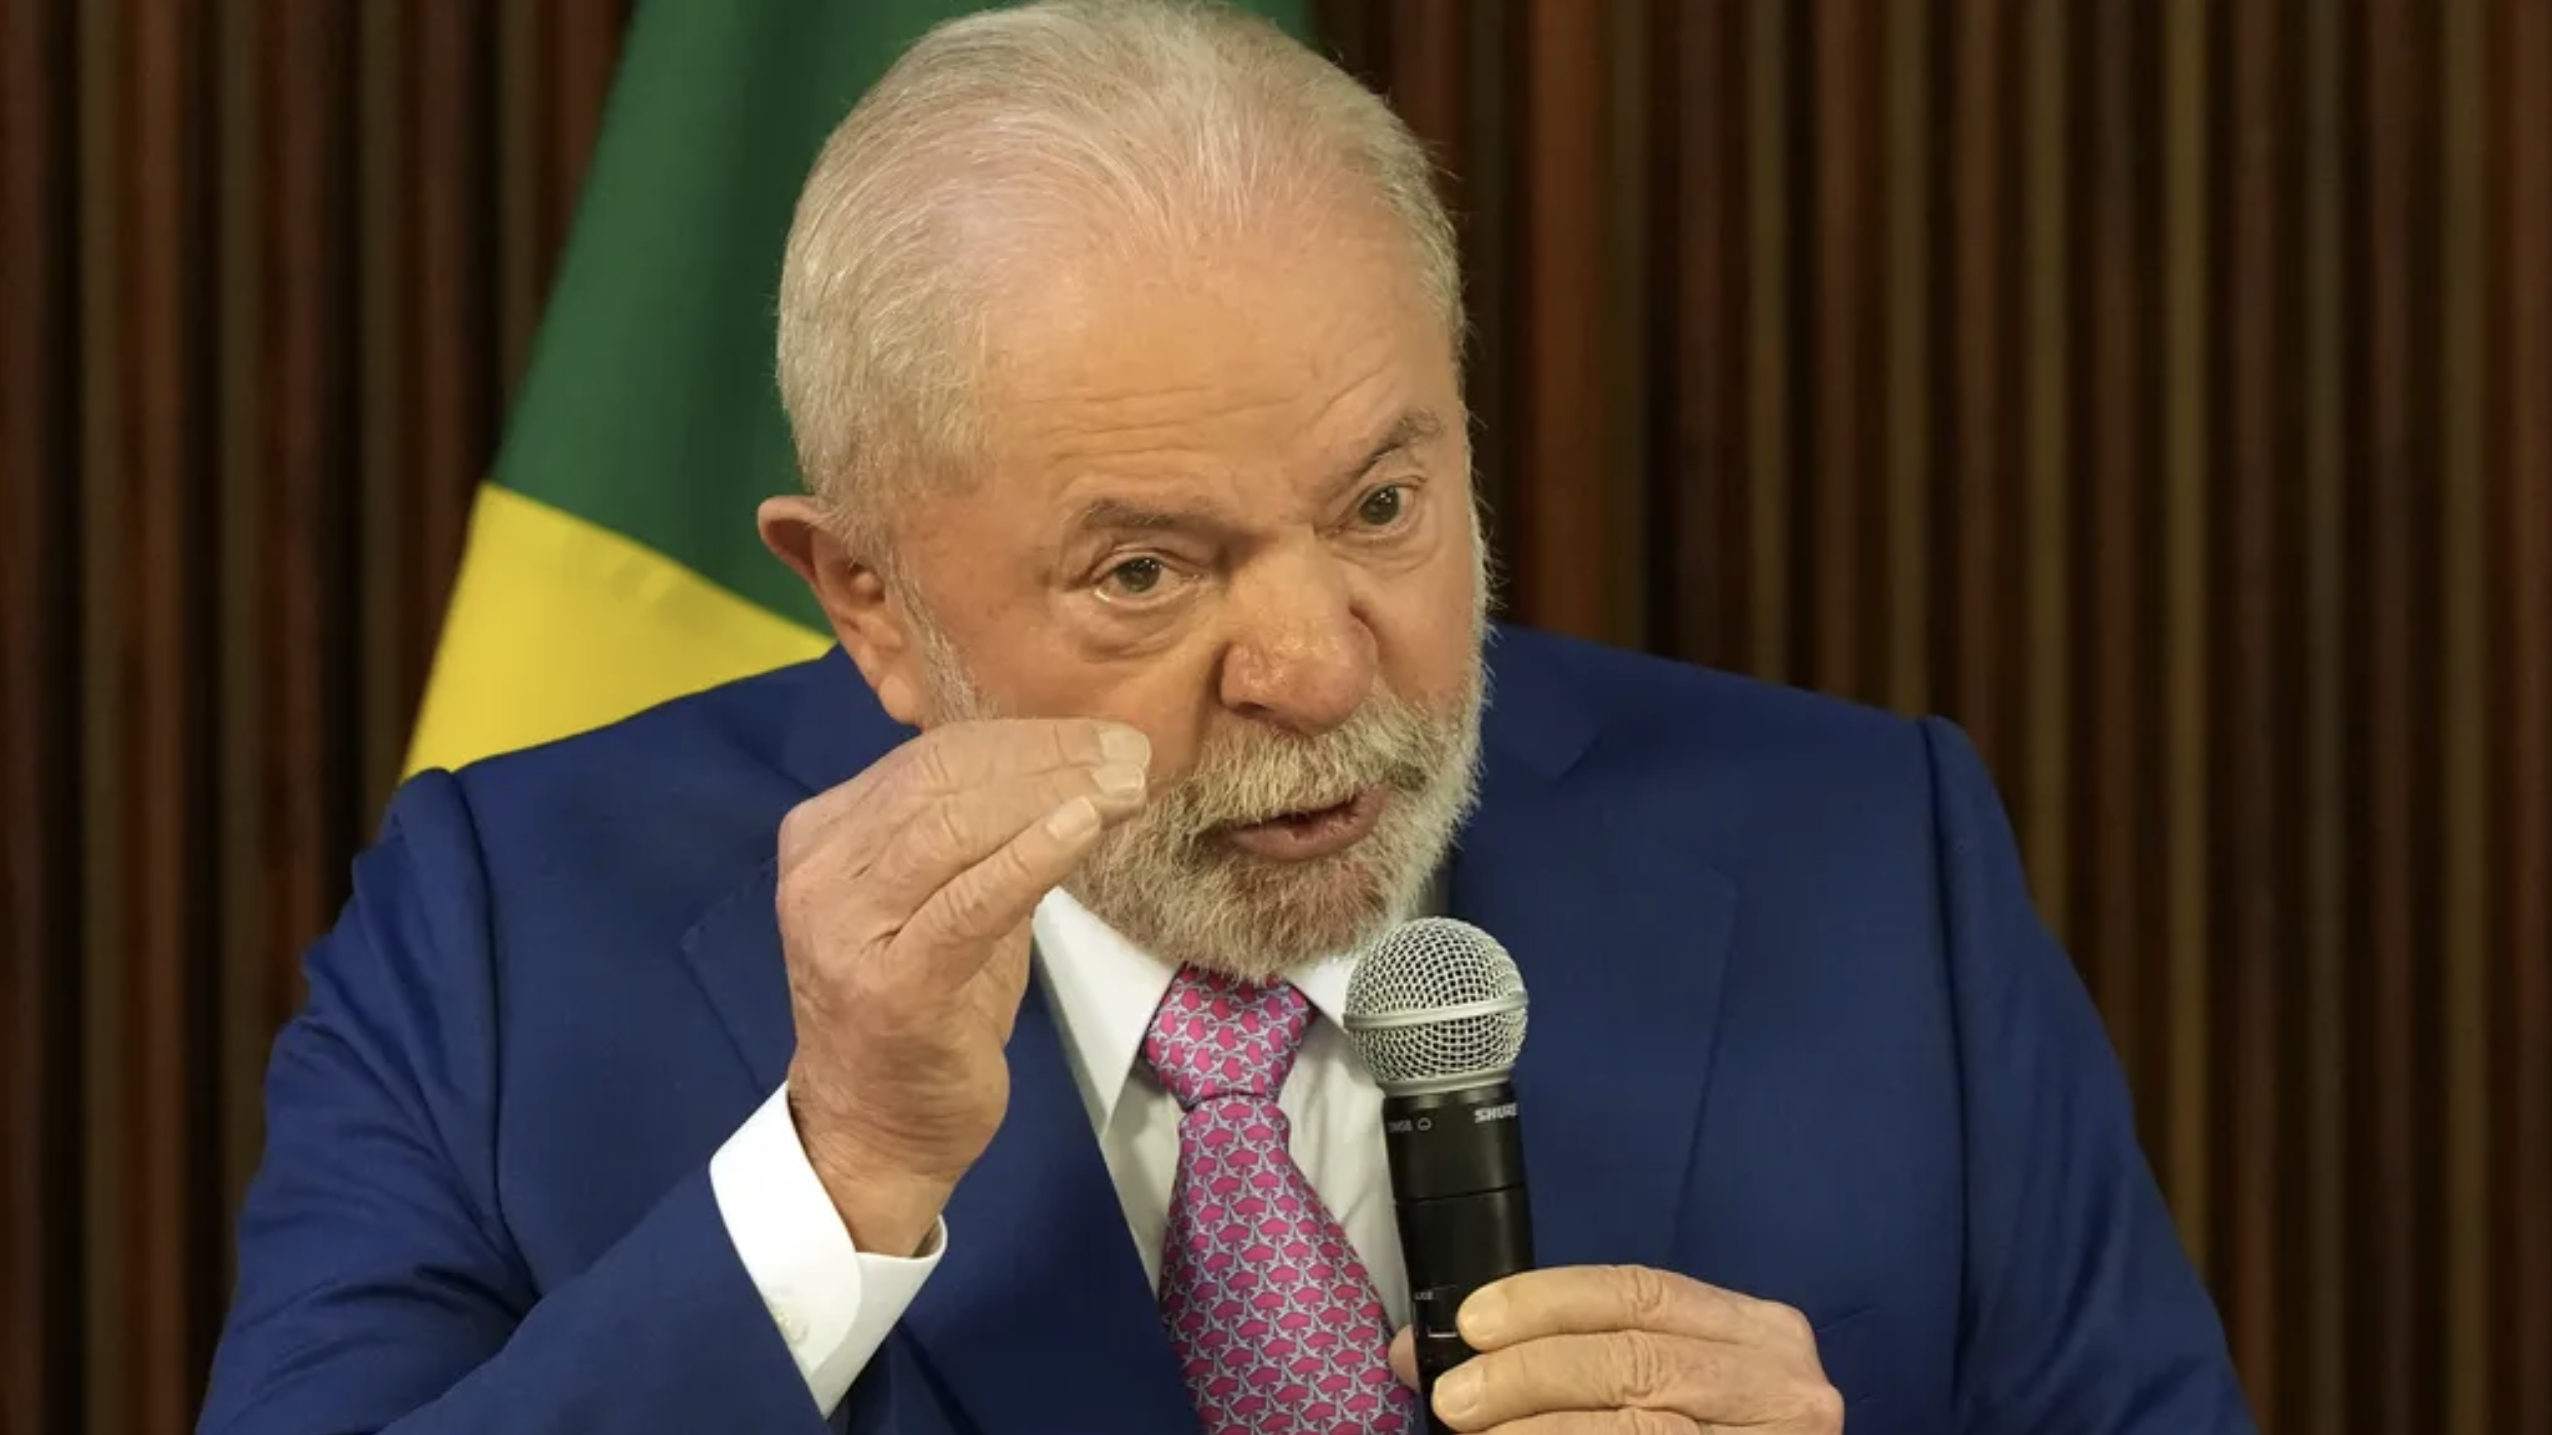 El gobierno de Lula en Brasil adopta un pronombre neutro en los actos oficiales